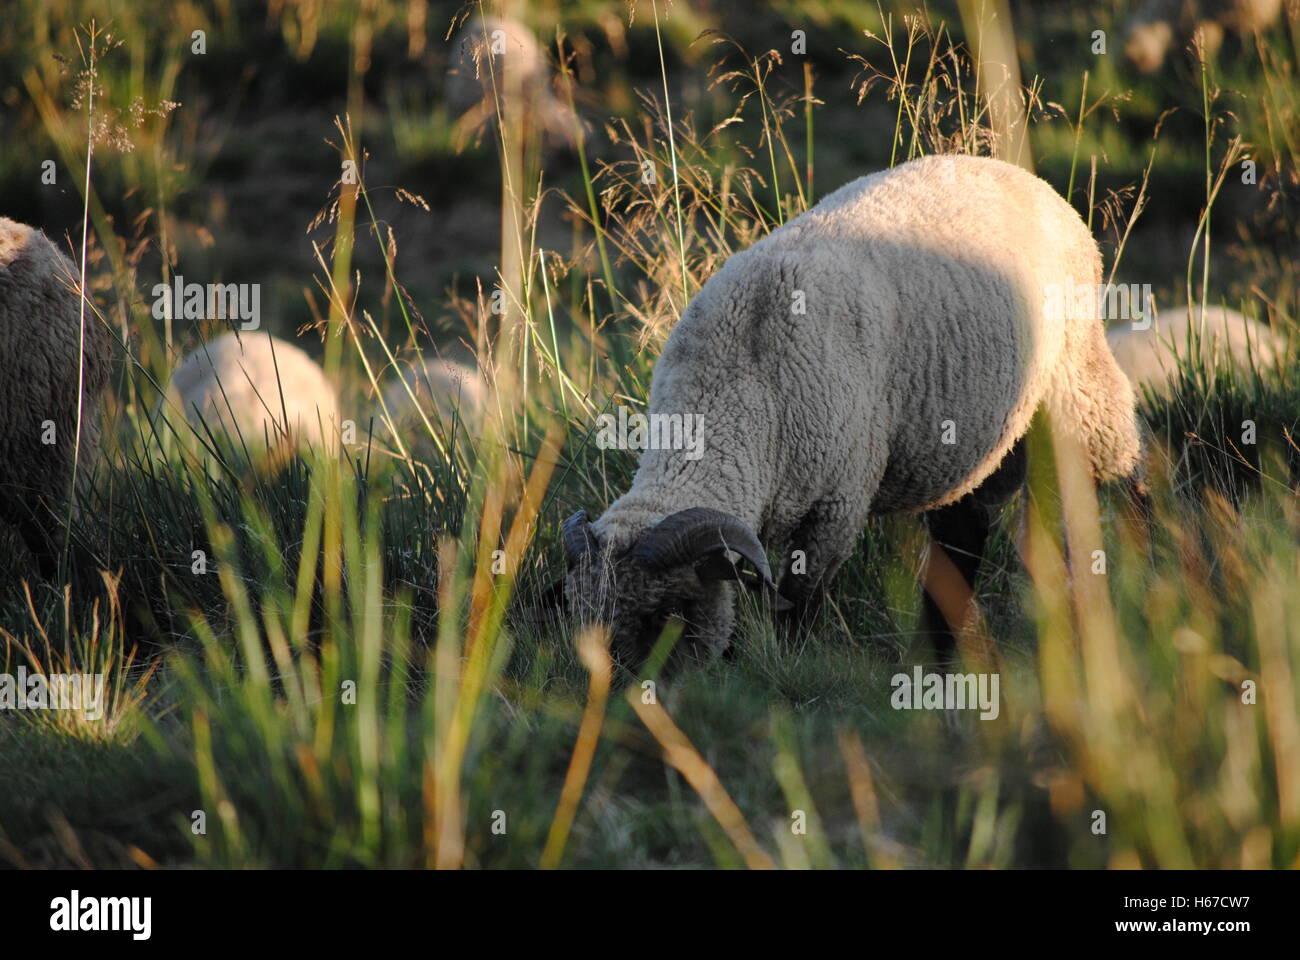 Rebaño de ovejas en las montañas Foto de stock